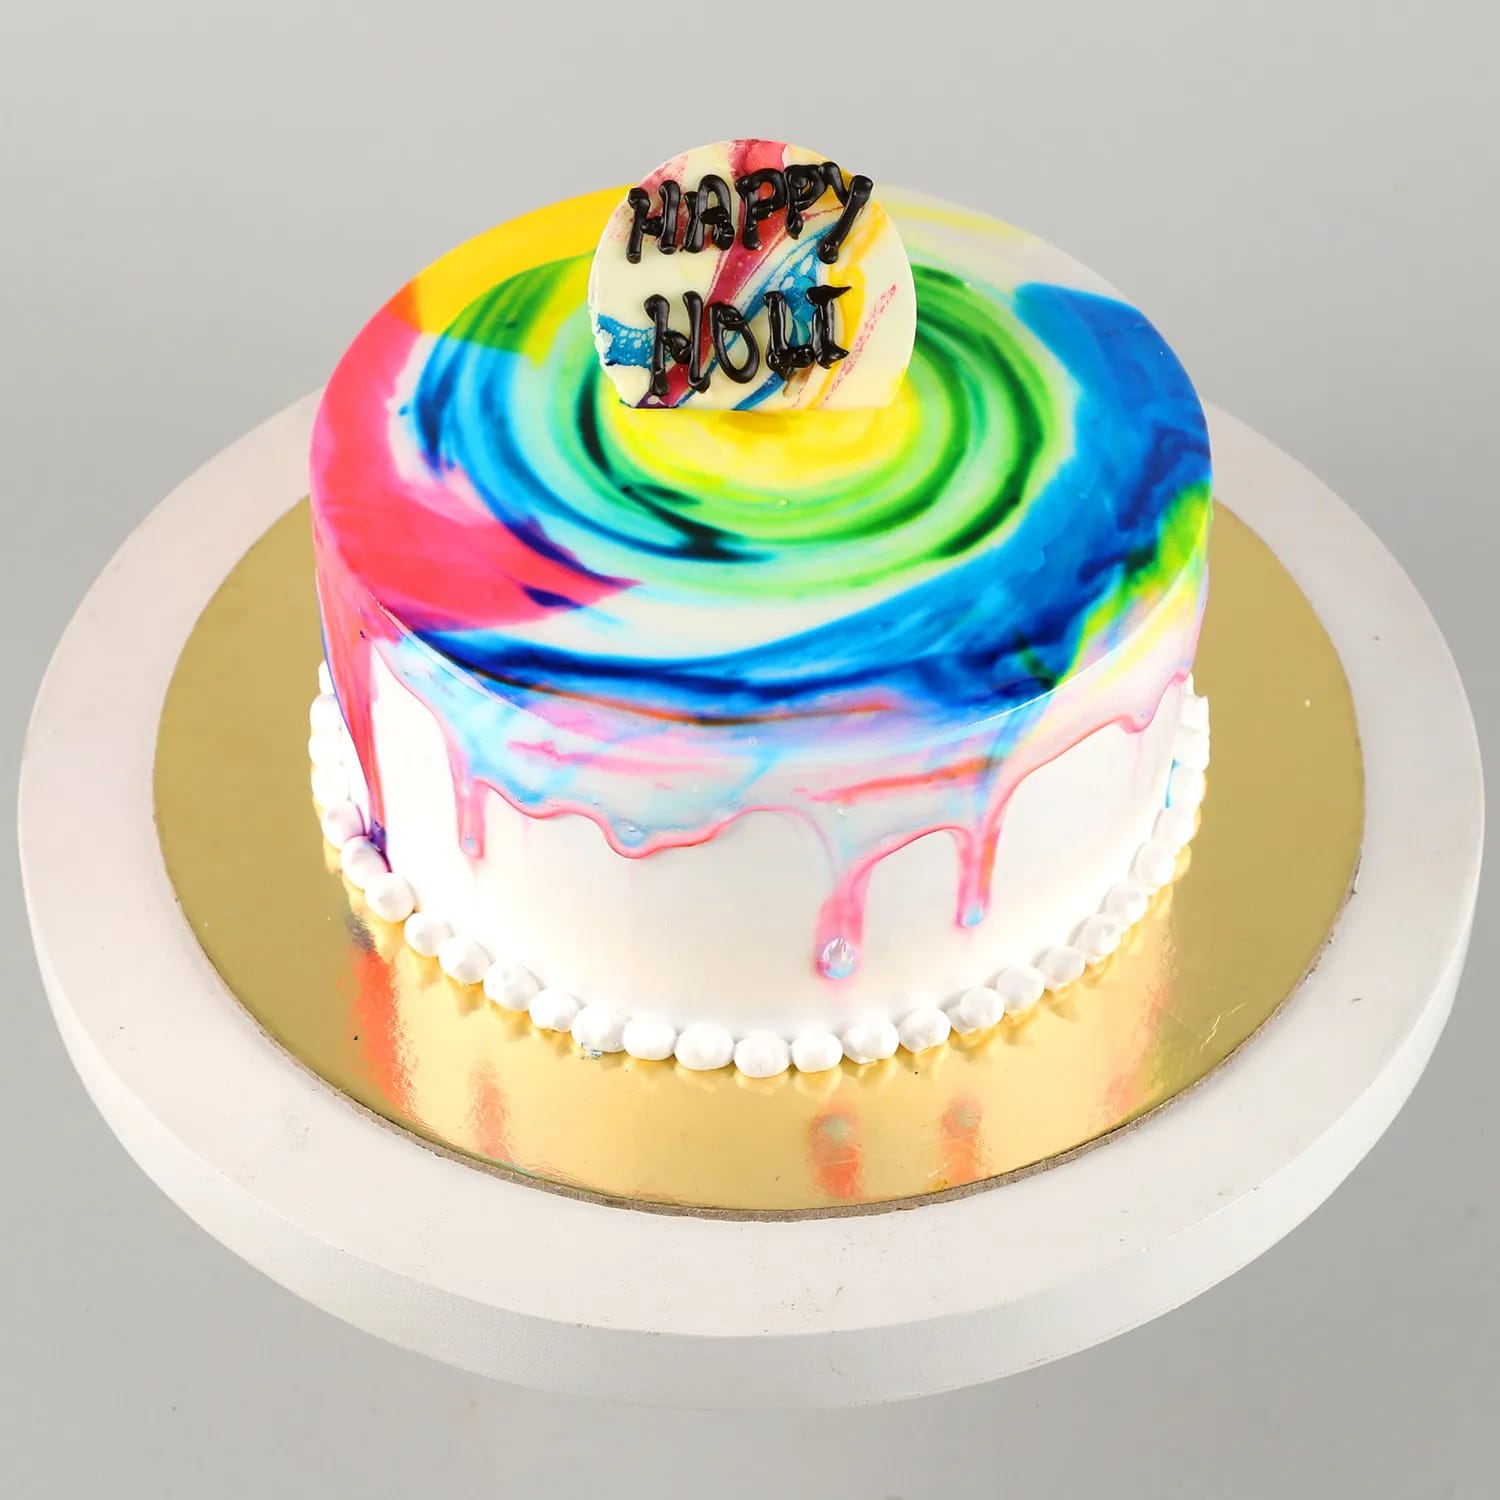 Butterfly Theme Designer Cake: Delight in Elegance | Avon Bakers